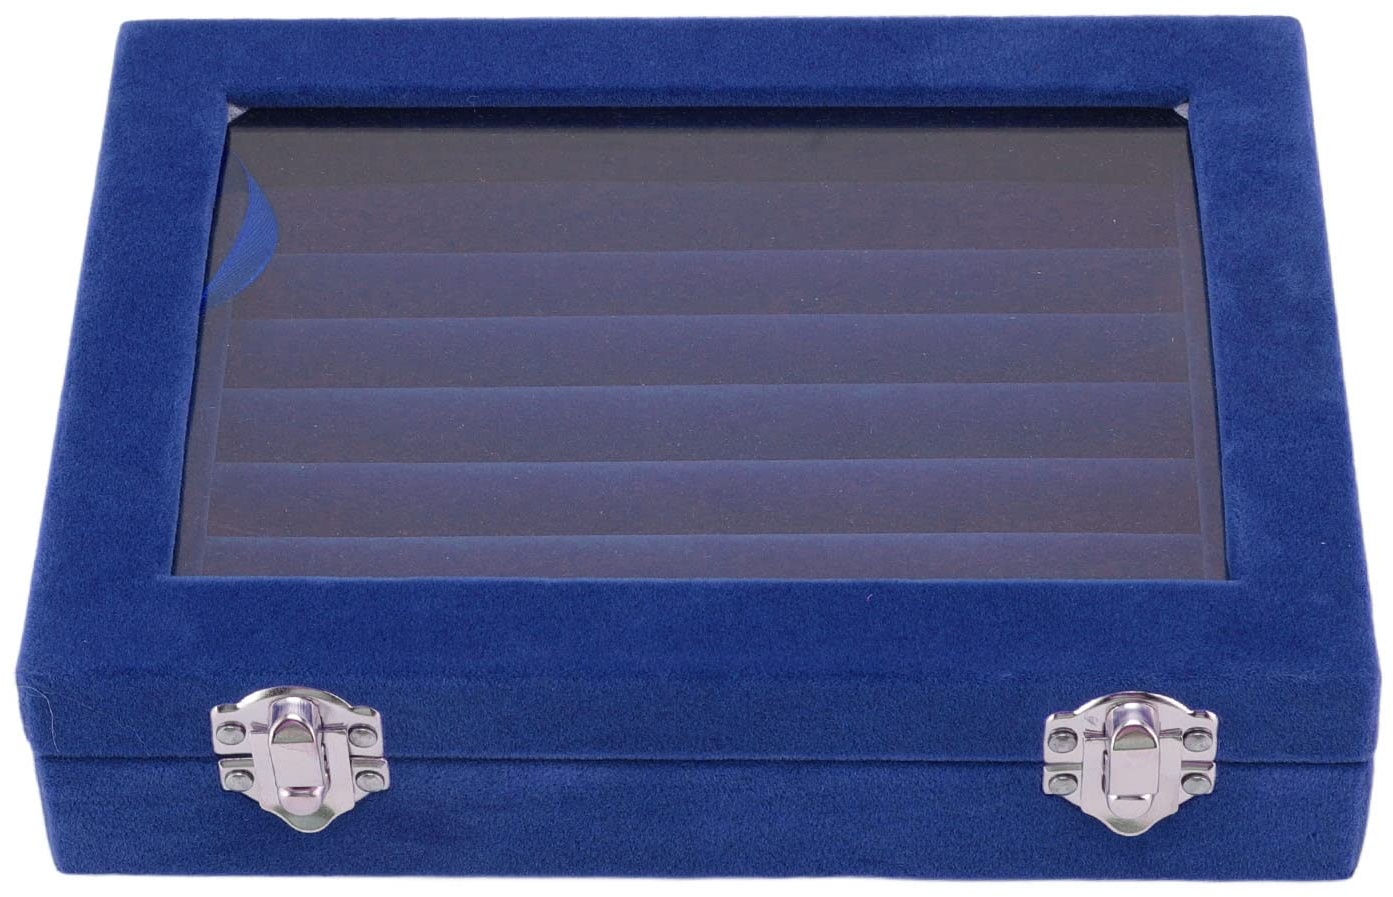 Aufbewahrungsbox für Schmuck Samt Box, Schmuckdisplay Box Jewelry Display Organizer Tray Holder Case Ring Ringkasten Schmuckkasten 7 Fächer Schmuckkästchen Ringe Ohrringe Manschettenknöpfe [Blau]